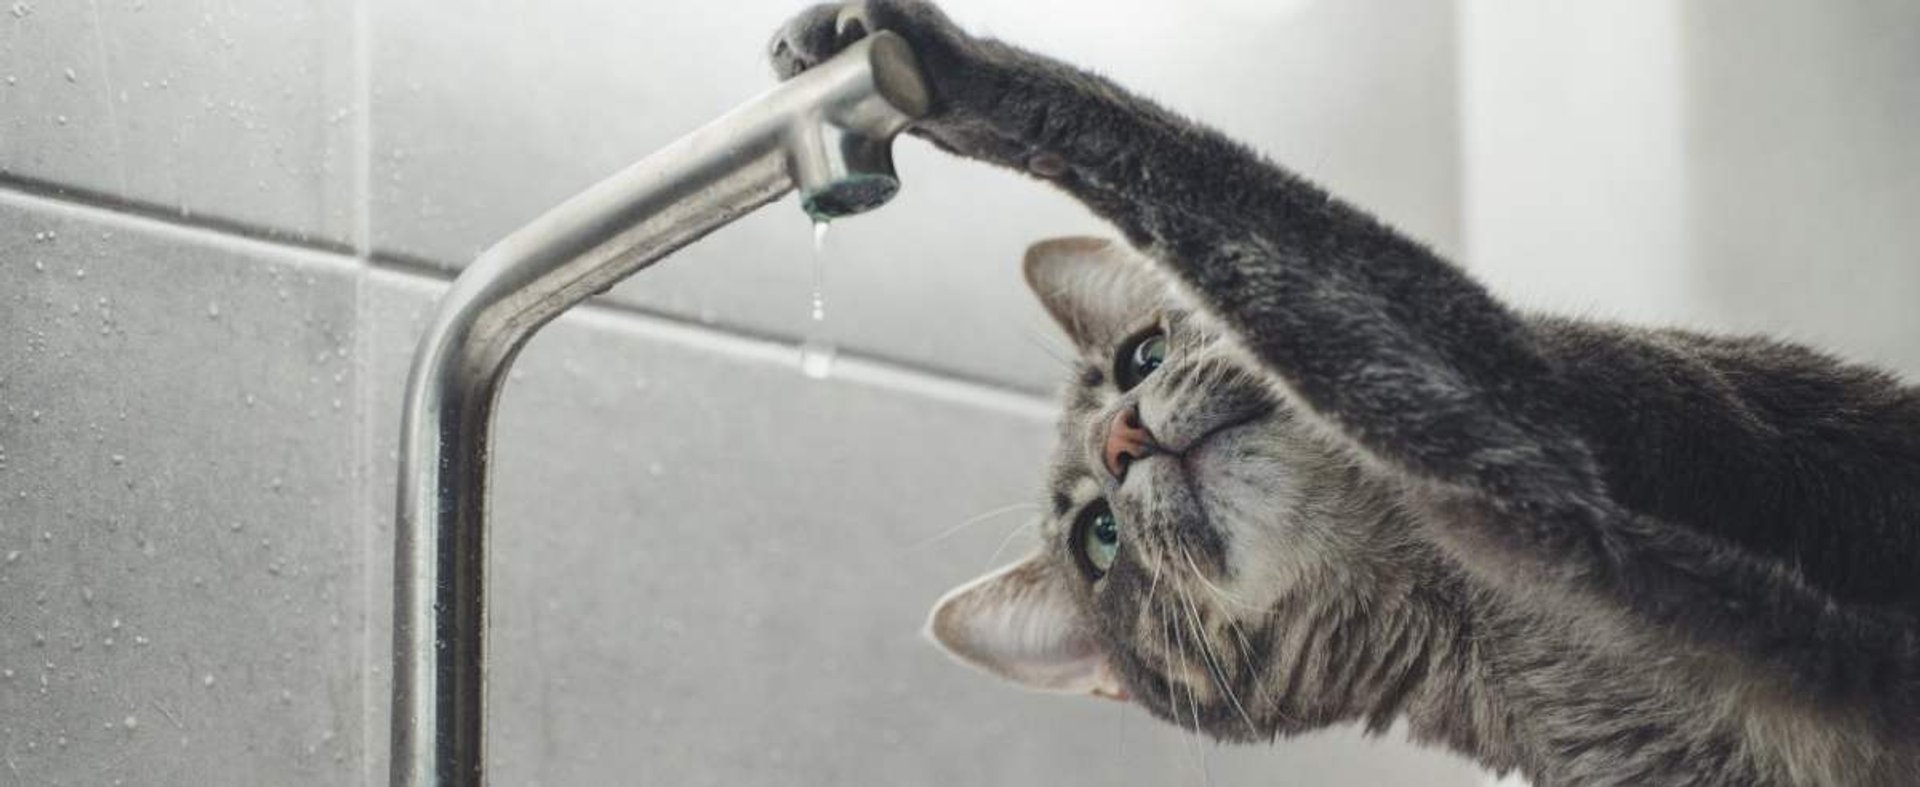 Bury kot przy kranie z wodą